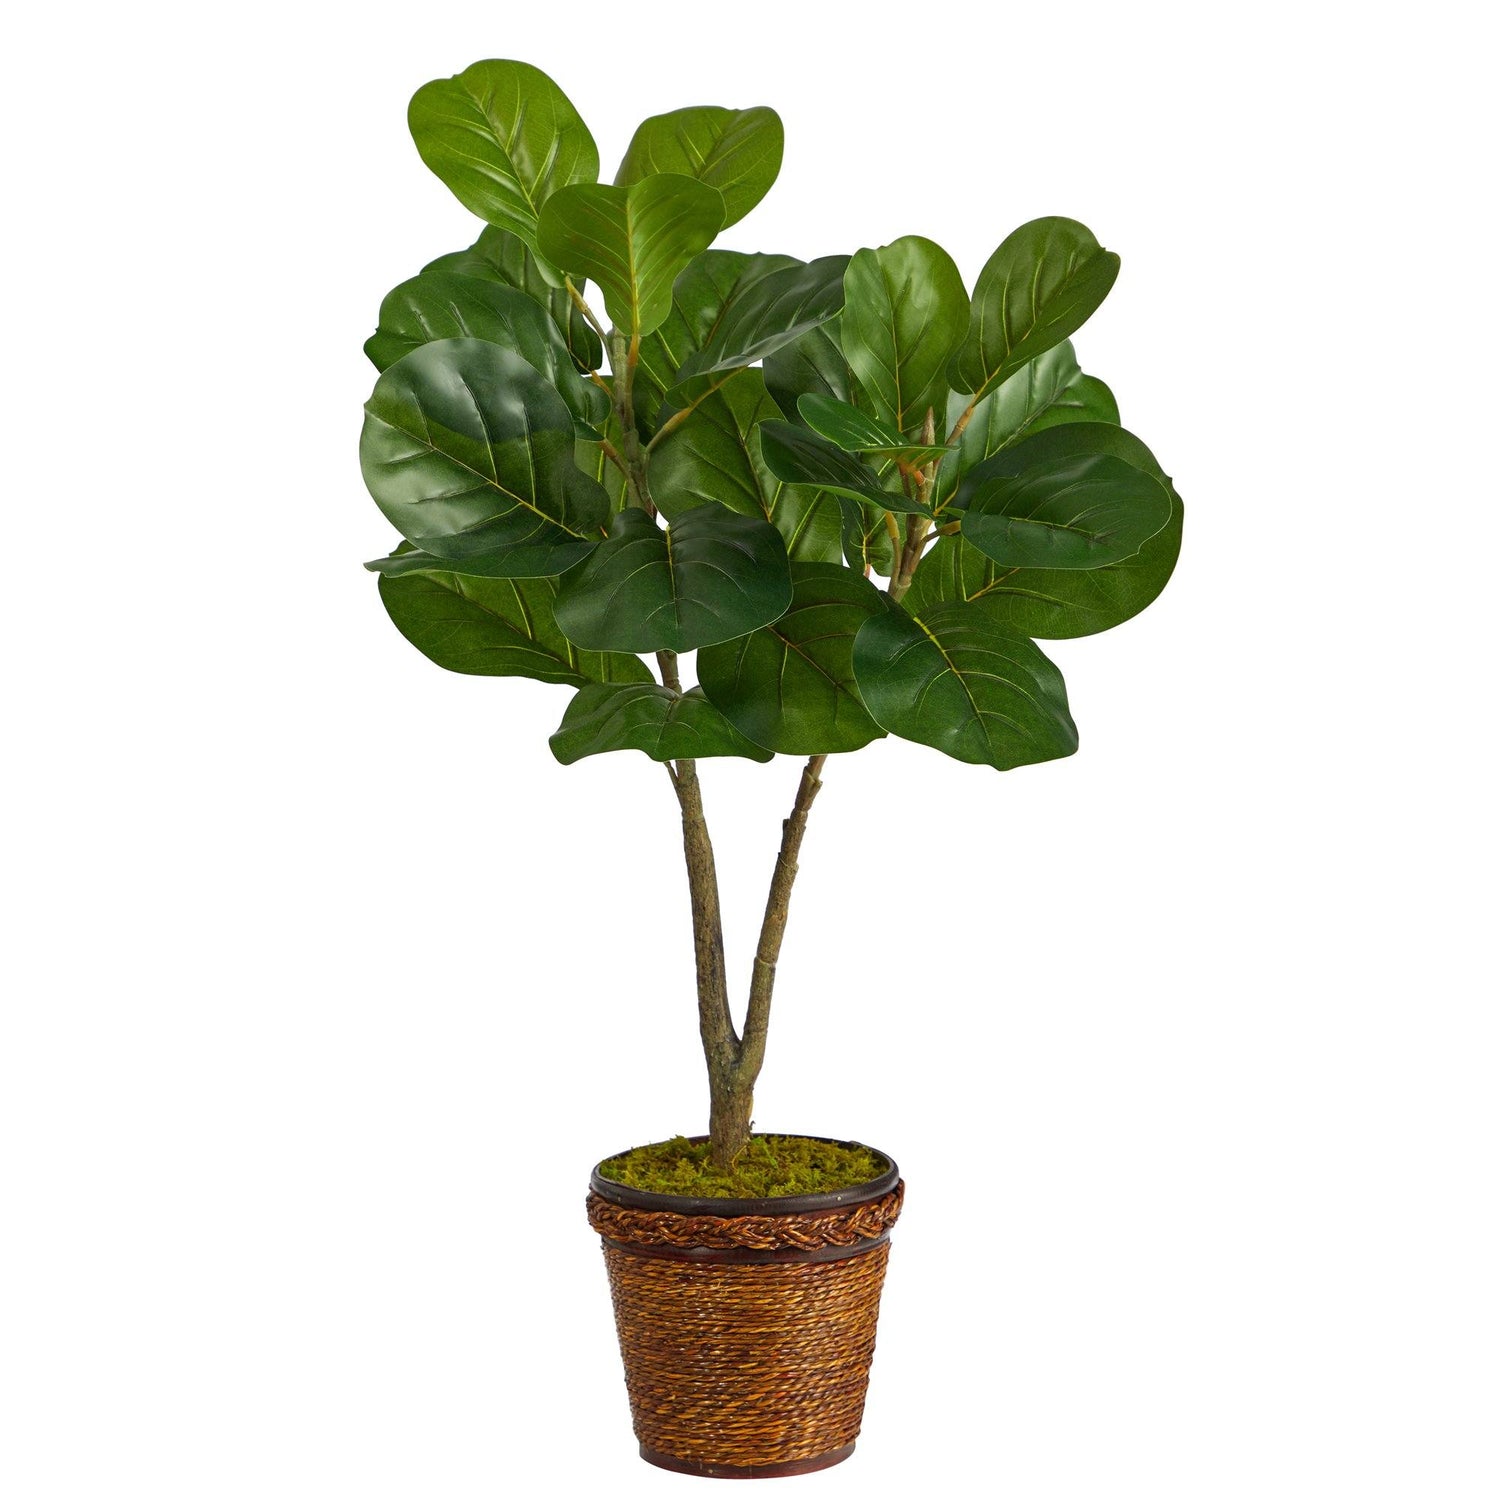 33” Fiddle Leaf Fig Artificial Tree in Basket